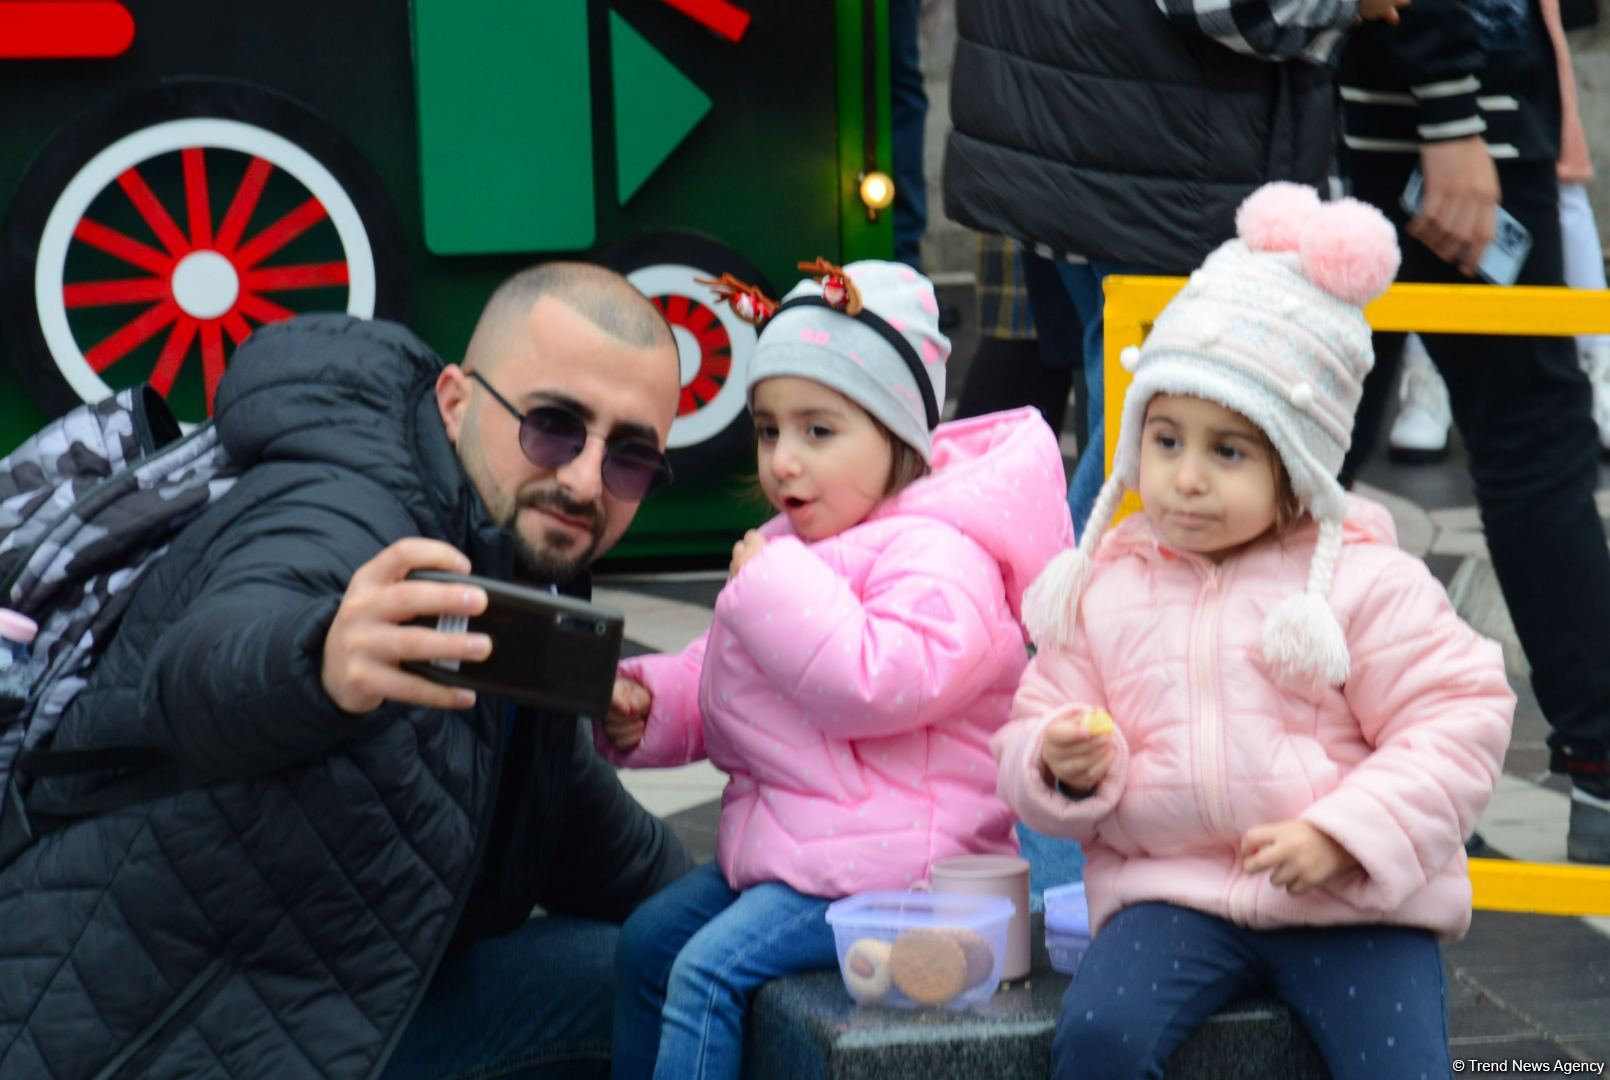 Фоторепортаж с благотворительной ярмарки в Баку  "Холодные руки, горячее сердце" (ФОТО)